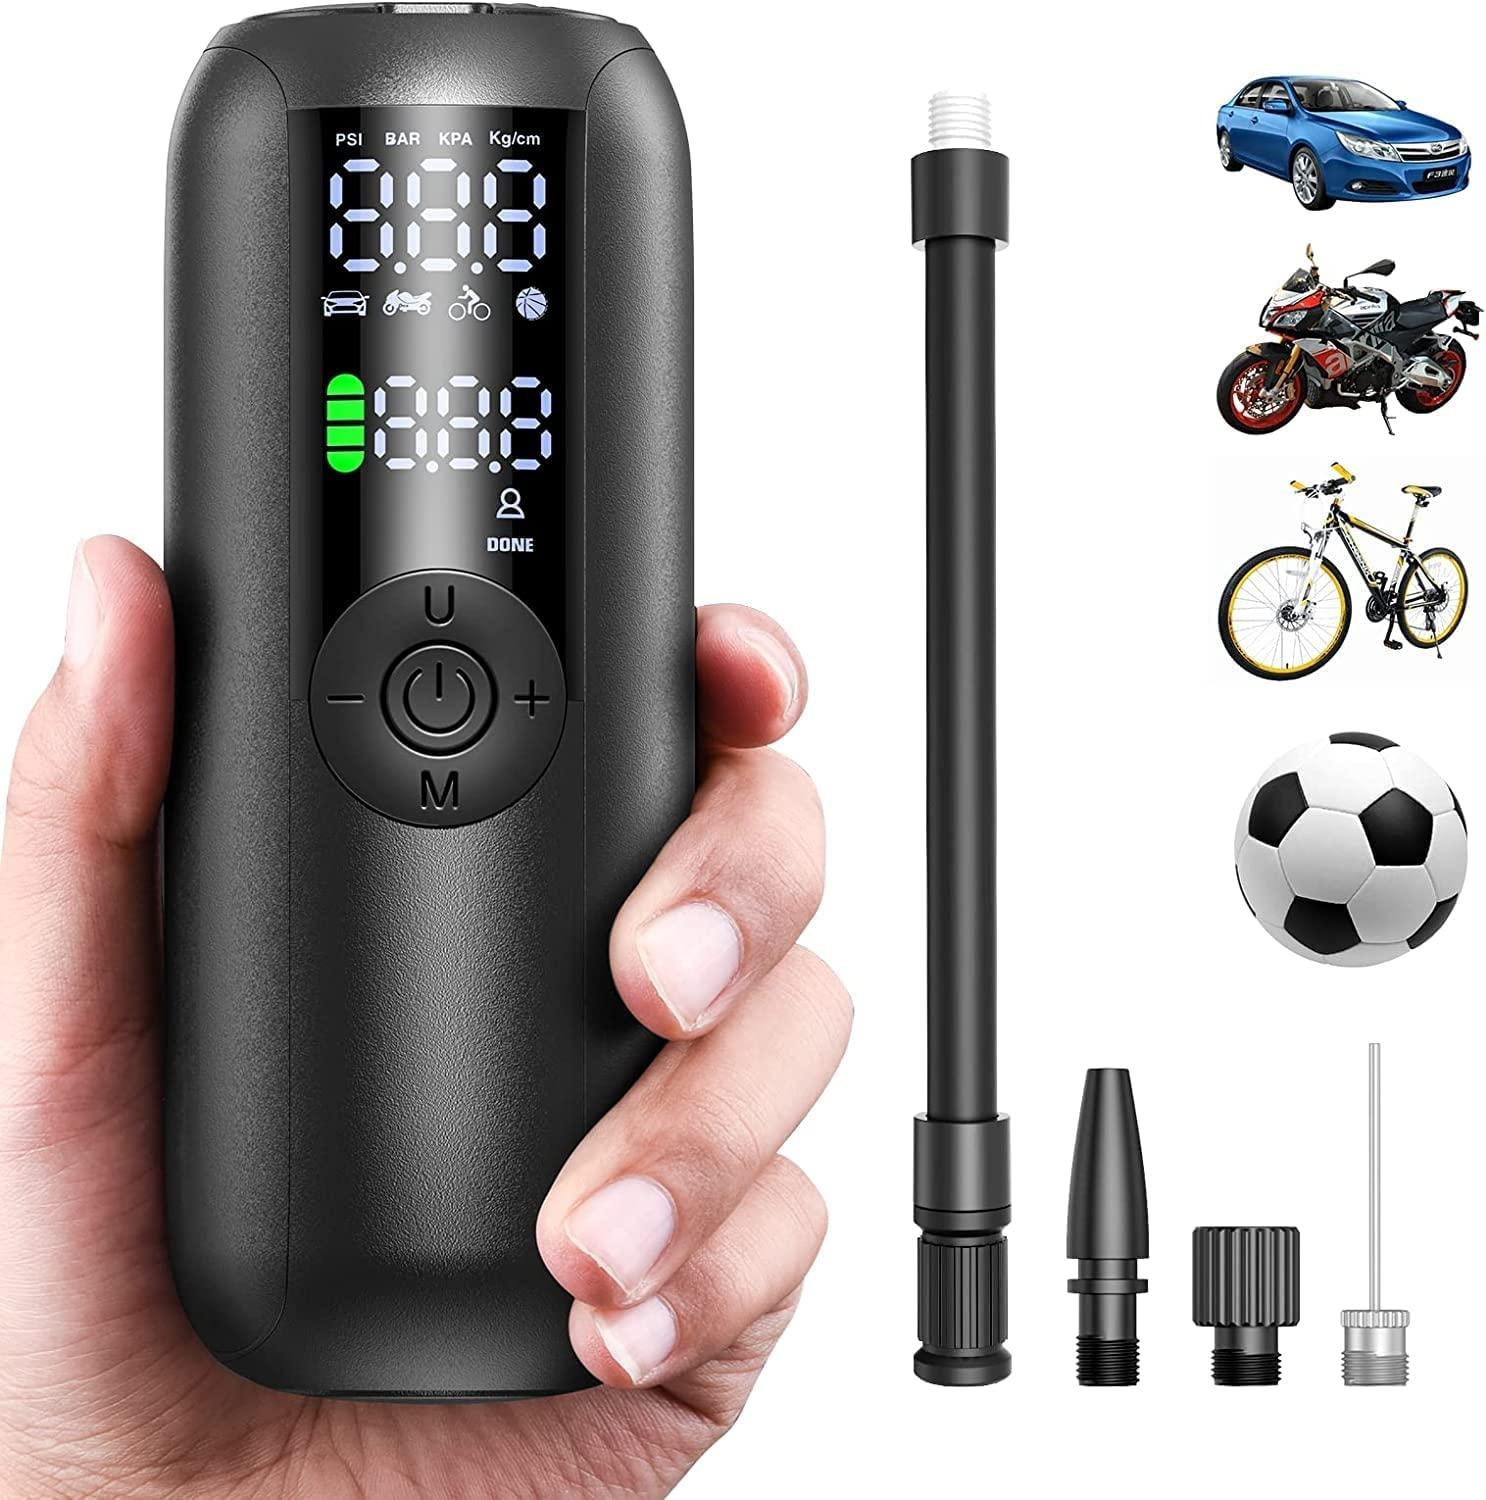 Batteridriven portabel pump till elscooter, bil, cykel - 150PSI pumpa däck kompr (1 av 7)